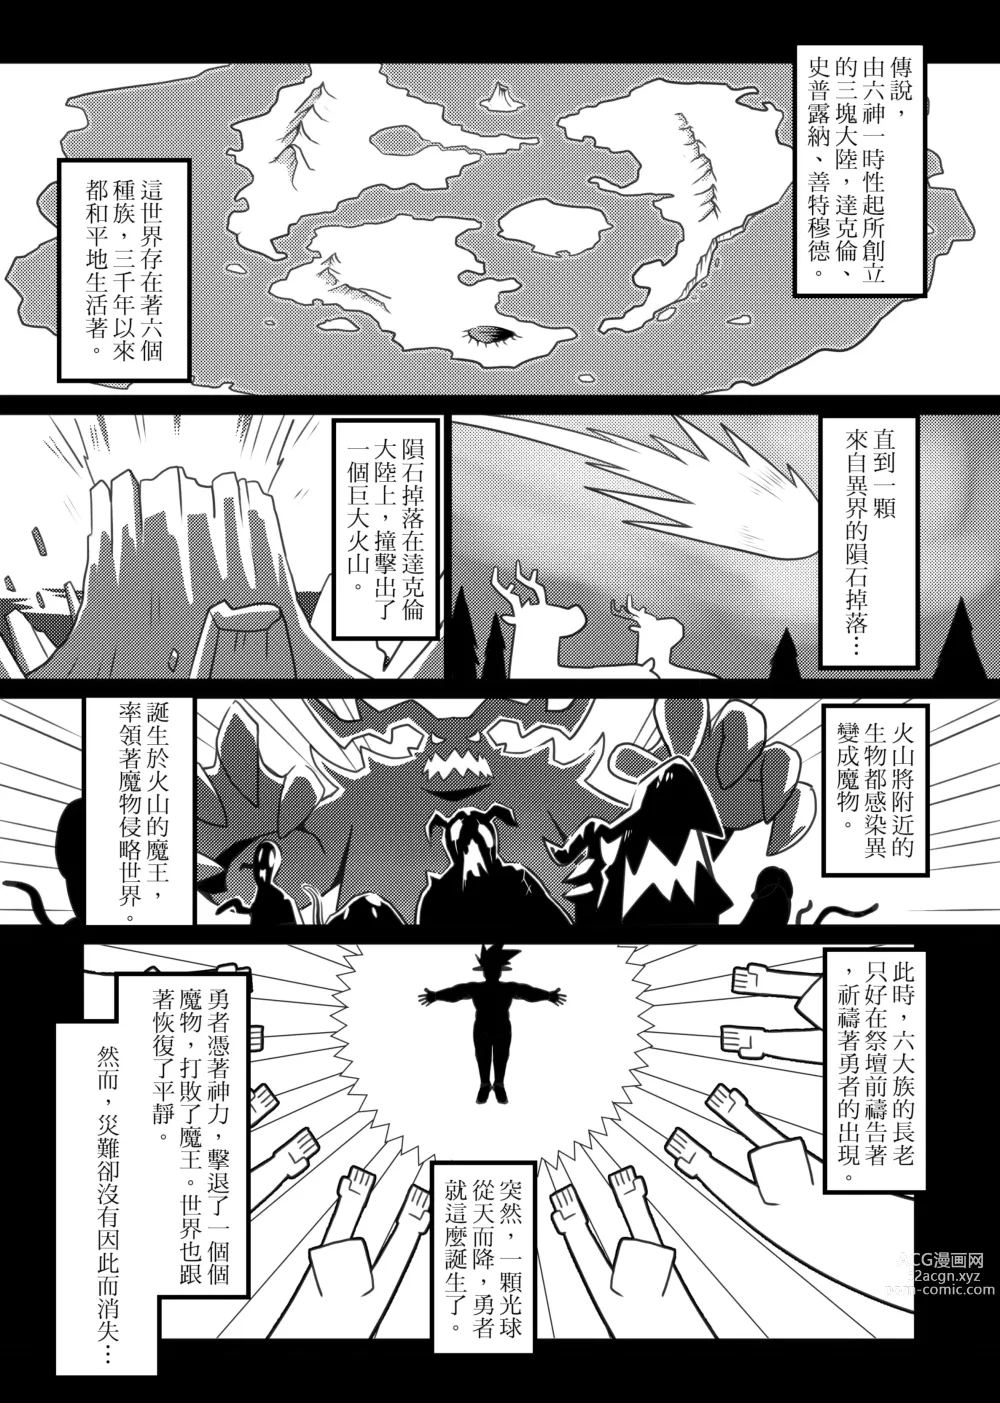 Page 2 of doujinshi 勇者的大小只有魔王塞得下1